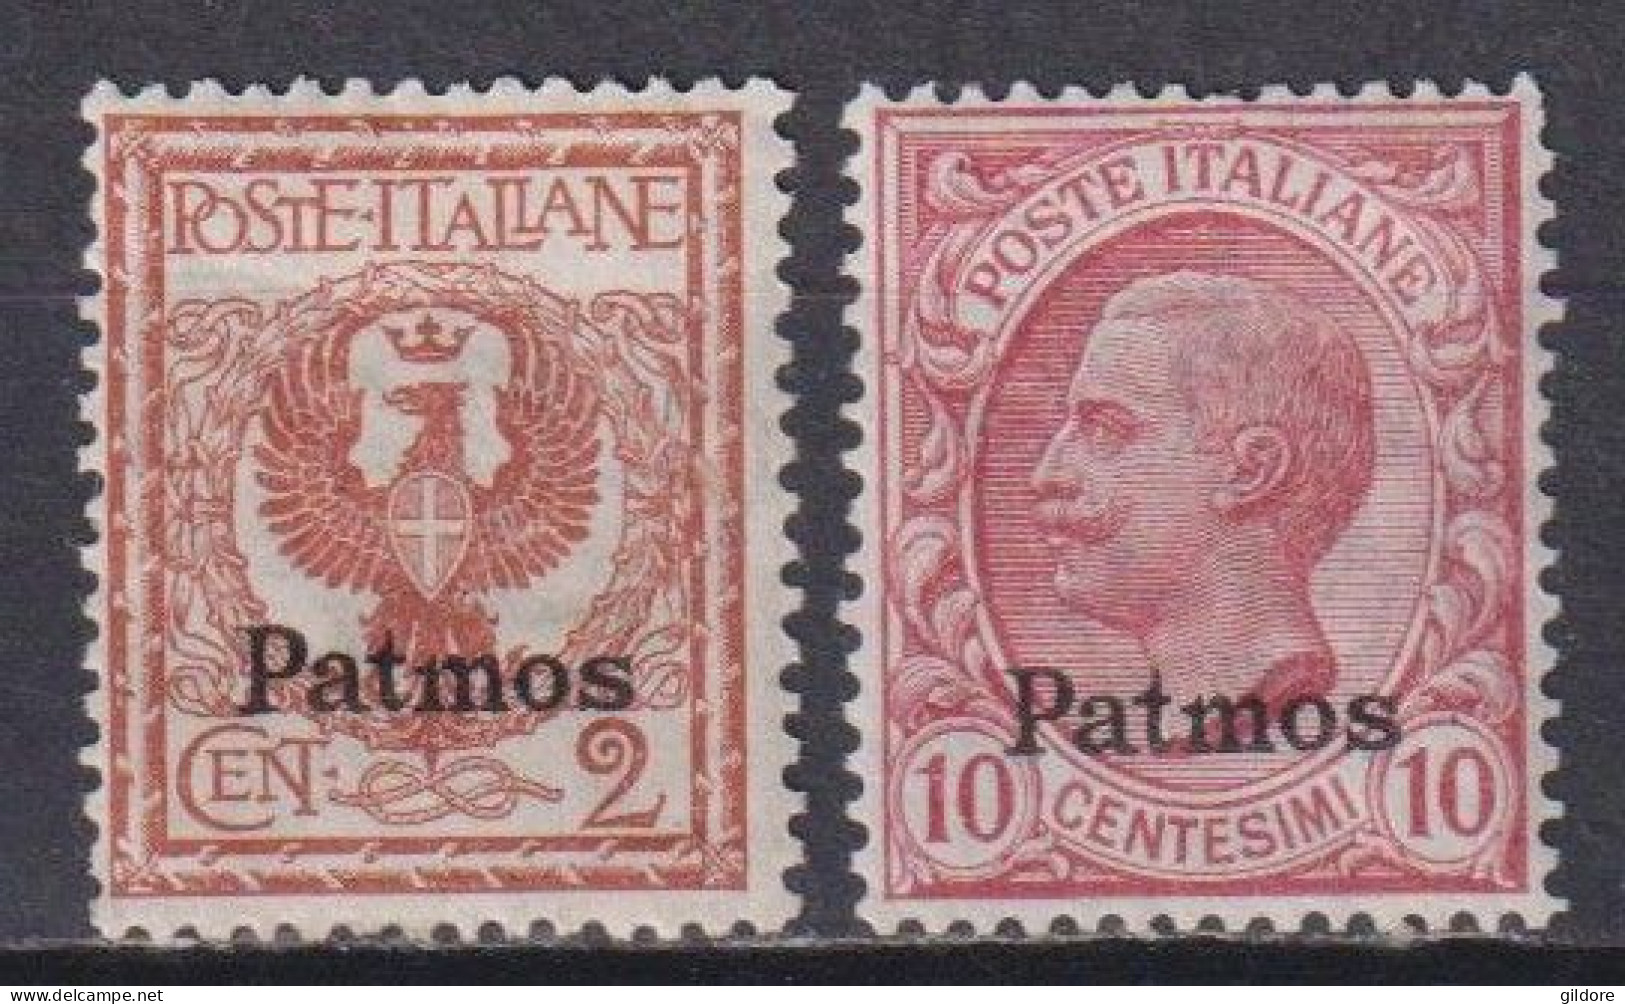 ITALIA REGNO 1912 EGEO PATMOS 2 Cent + 10 Cent MNH - Egée (Patmo)